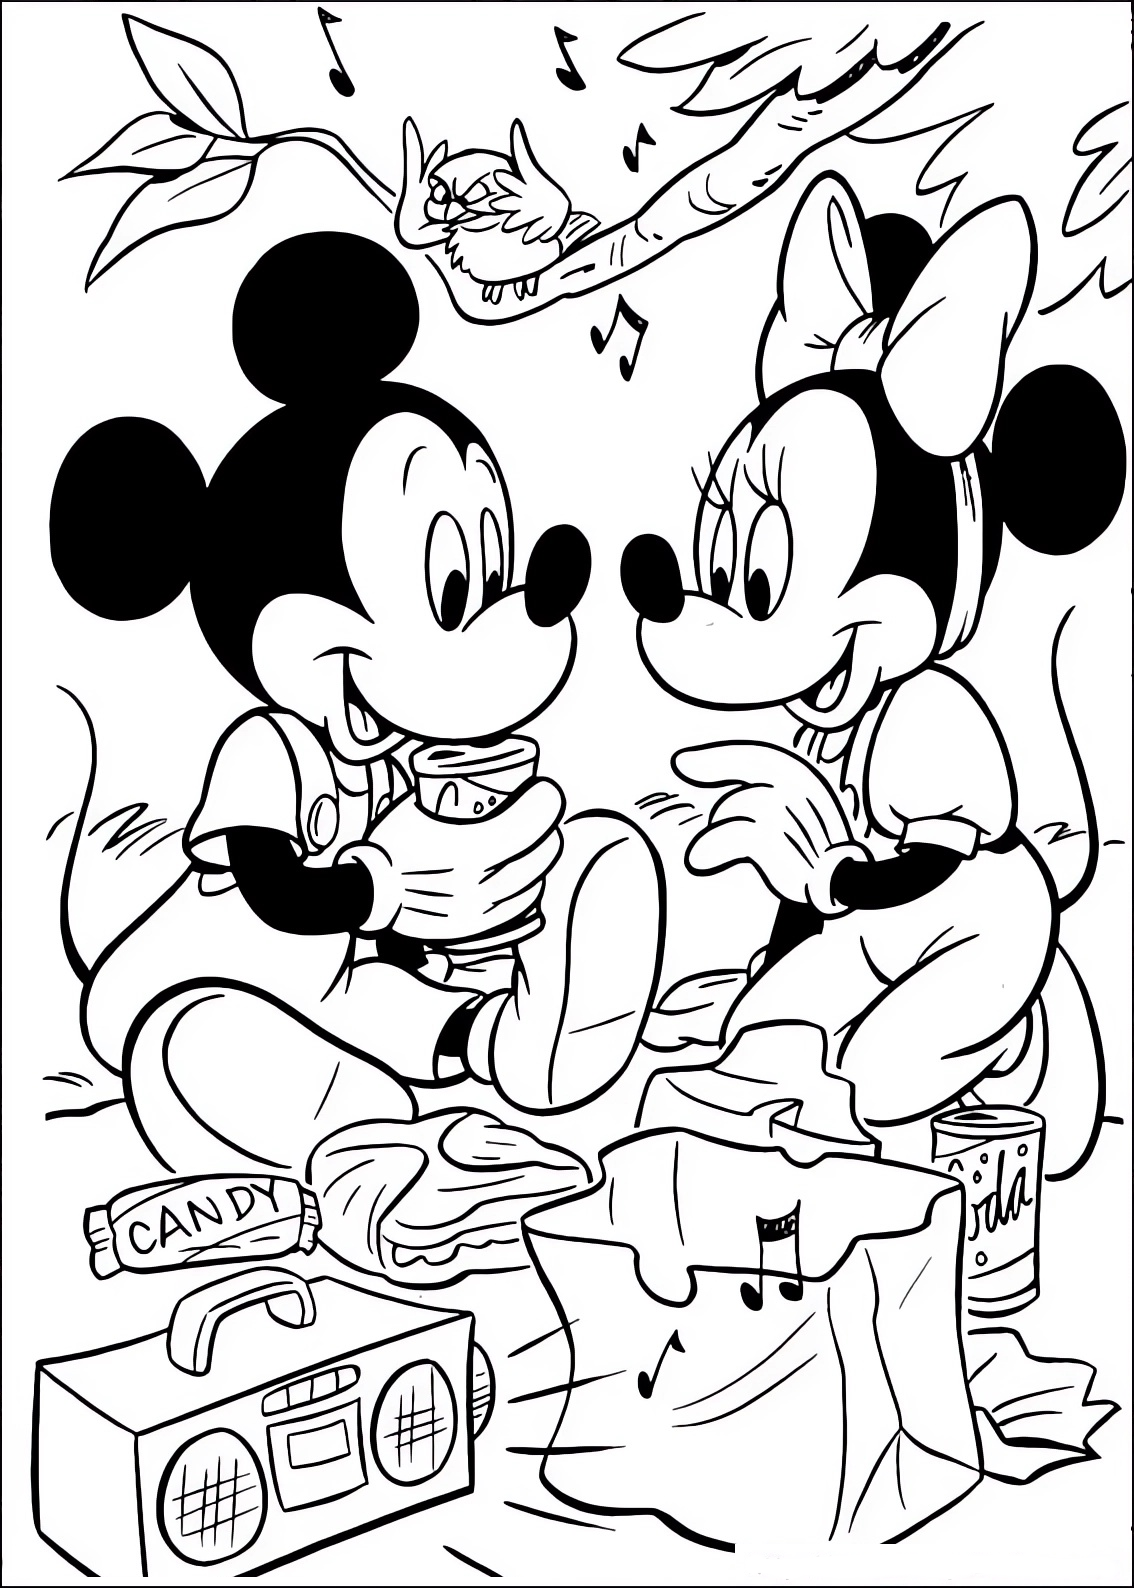 Disegno da colorare di Minnie e Topolino (Mickey Mouse) che fanno un picnic